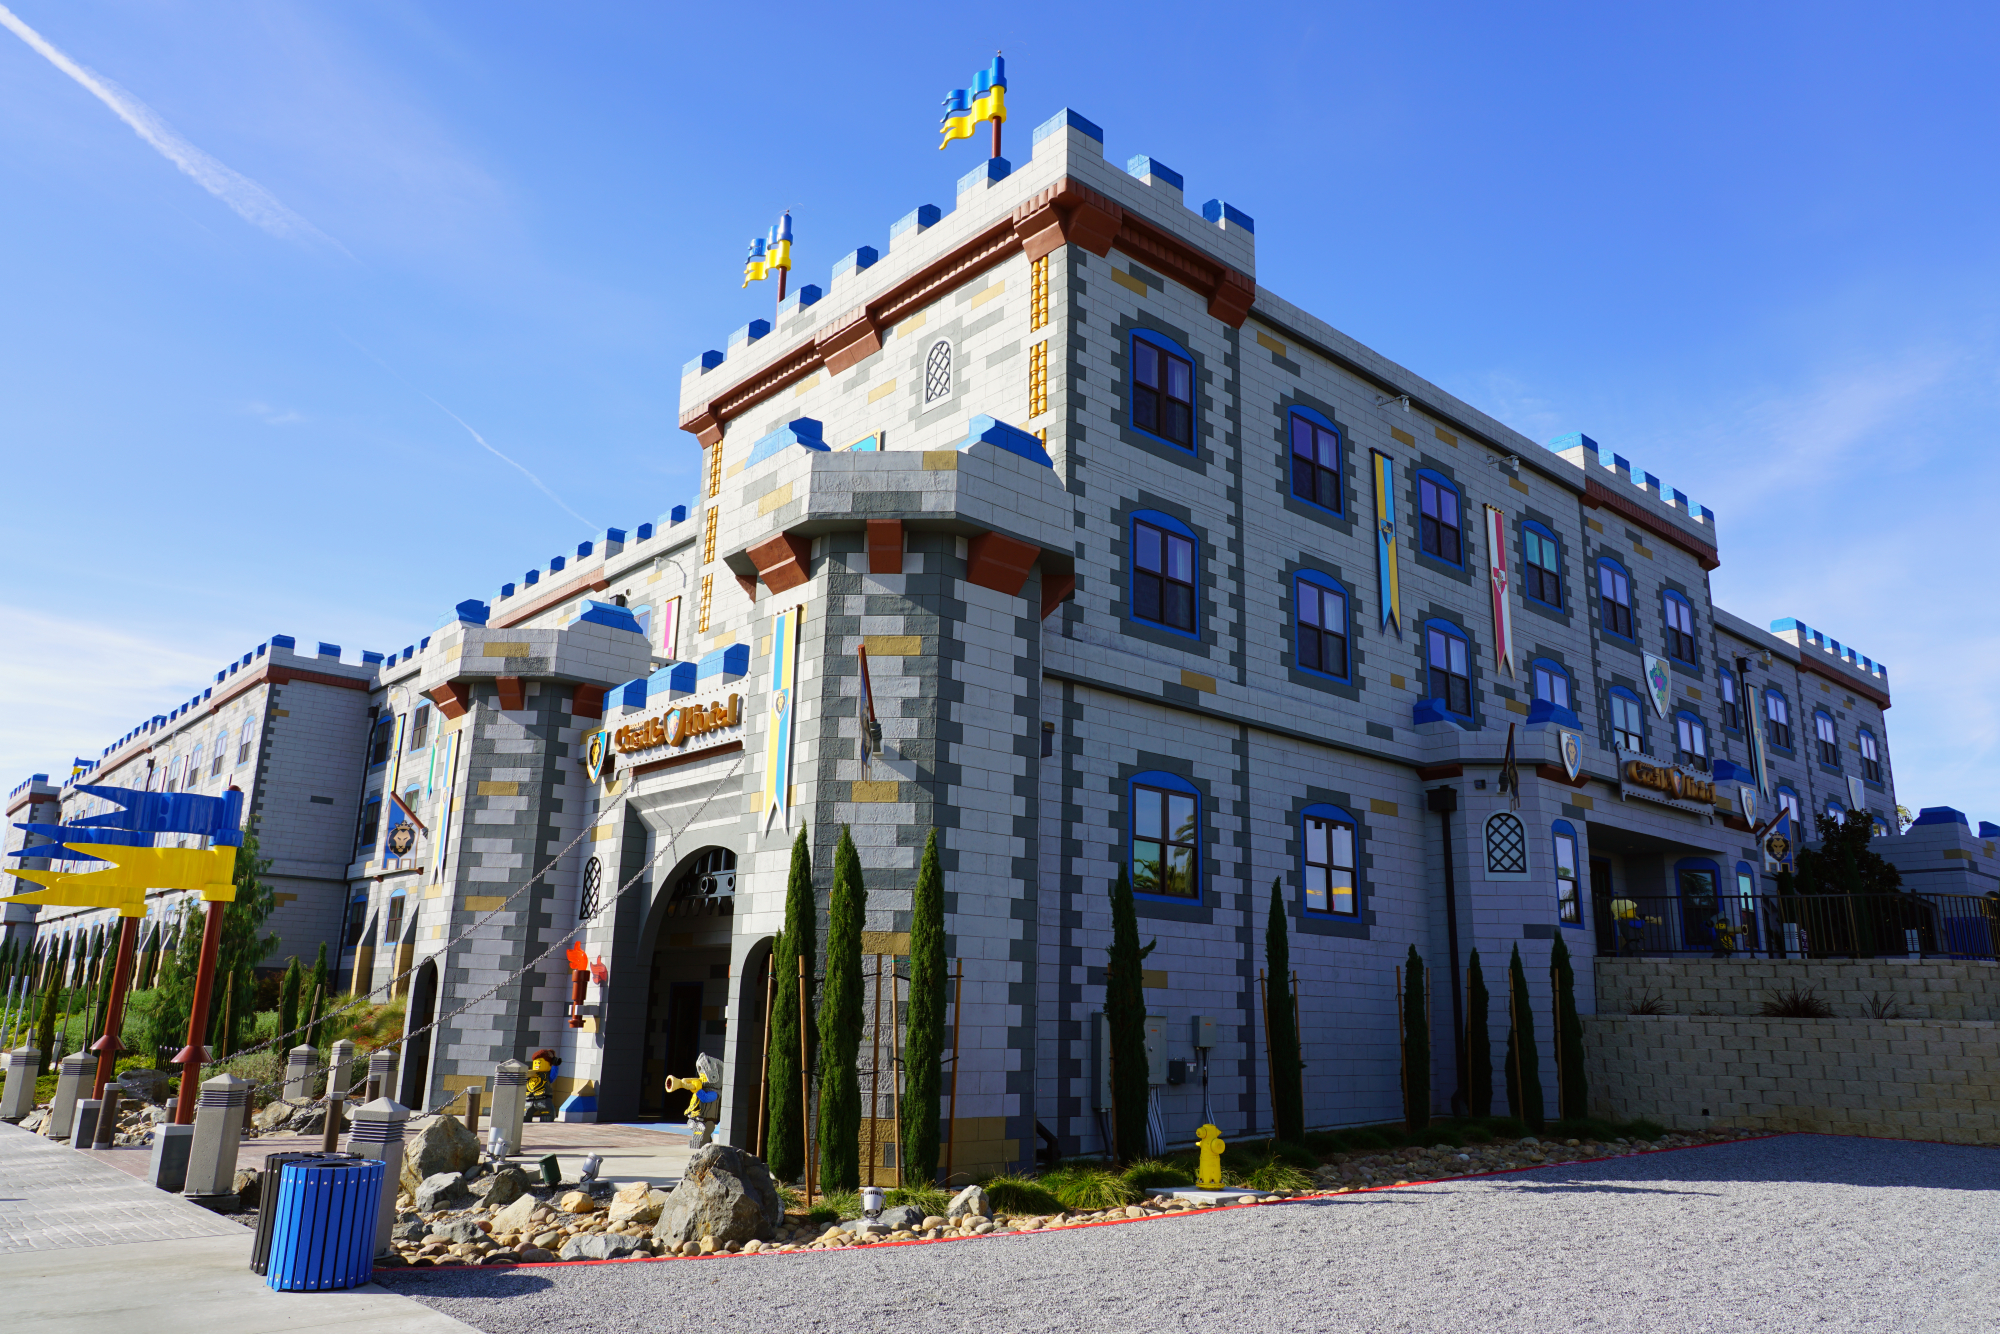 Legoland Castle Hotel: Εσύ θα έμενες στο φαντασμαγορικό θέρετρο της LEGO